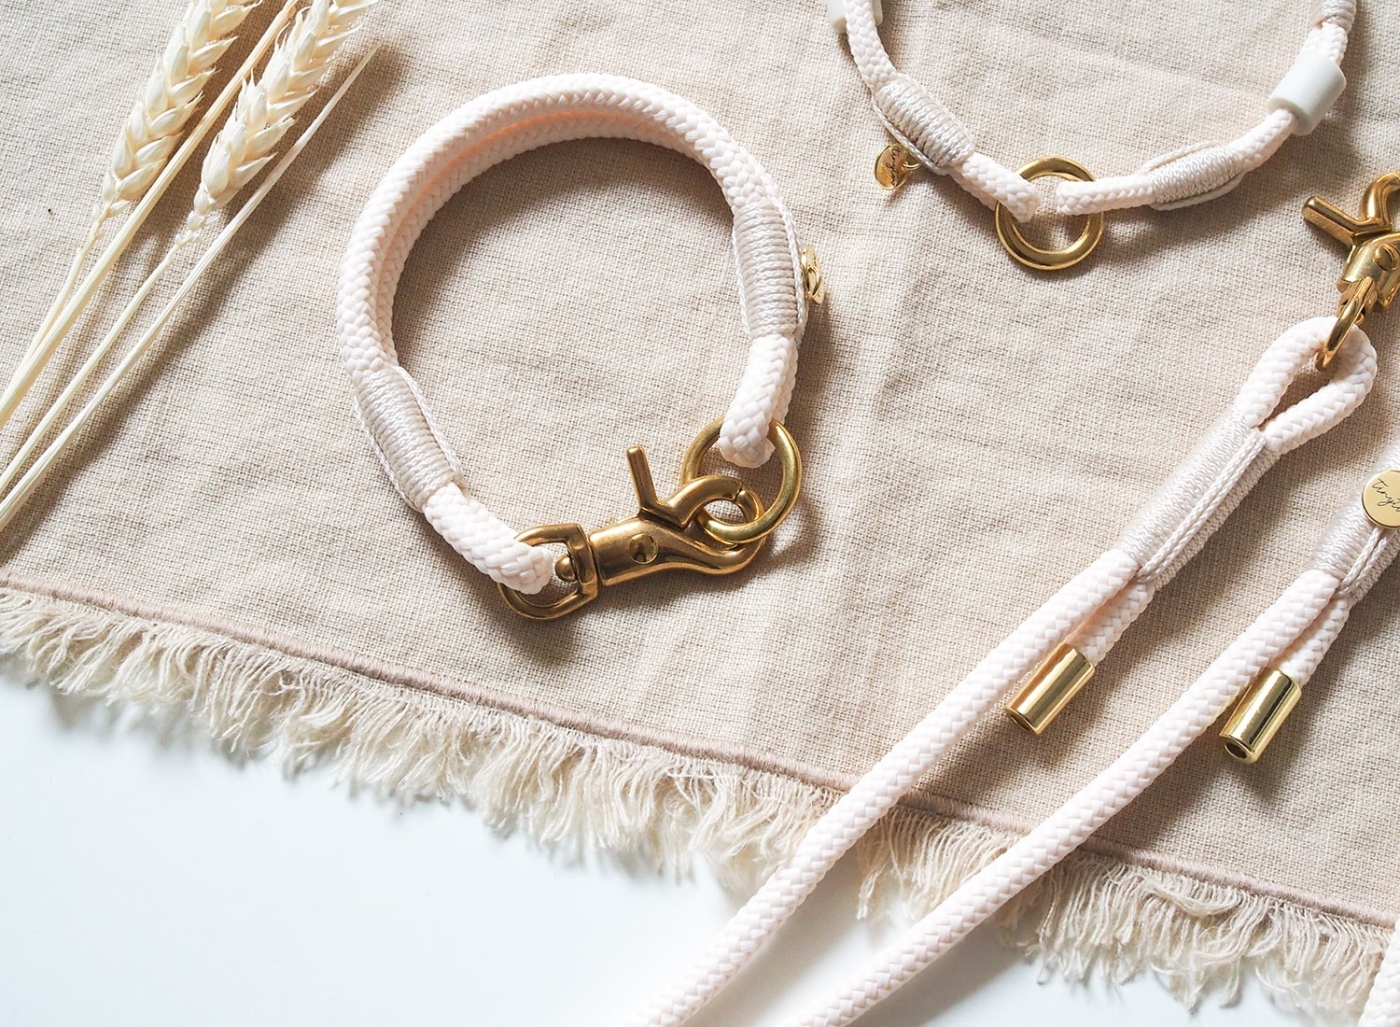 Halsband aus Tau in creme mit 6mm Tau und mini Scherenkarabiner.